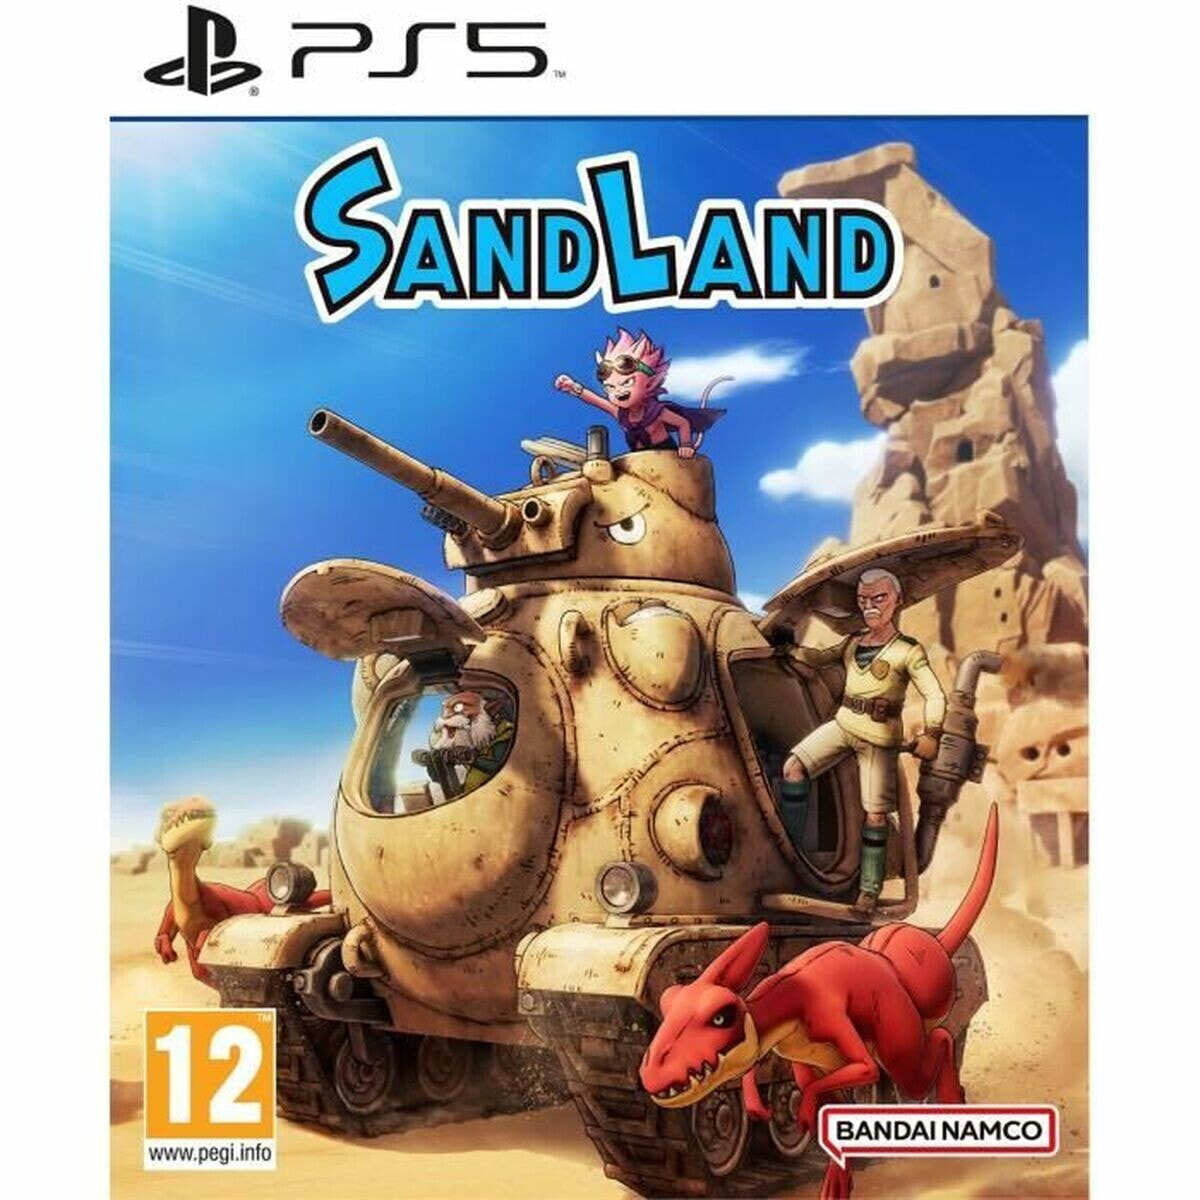 PlayStation 5 Video Game Bandai Namco Sandland (FR)